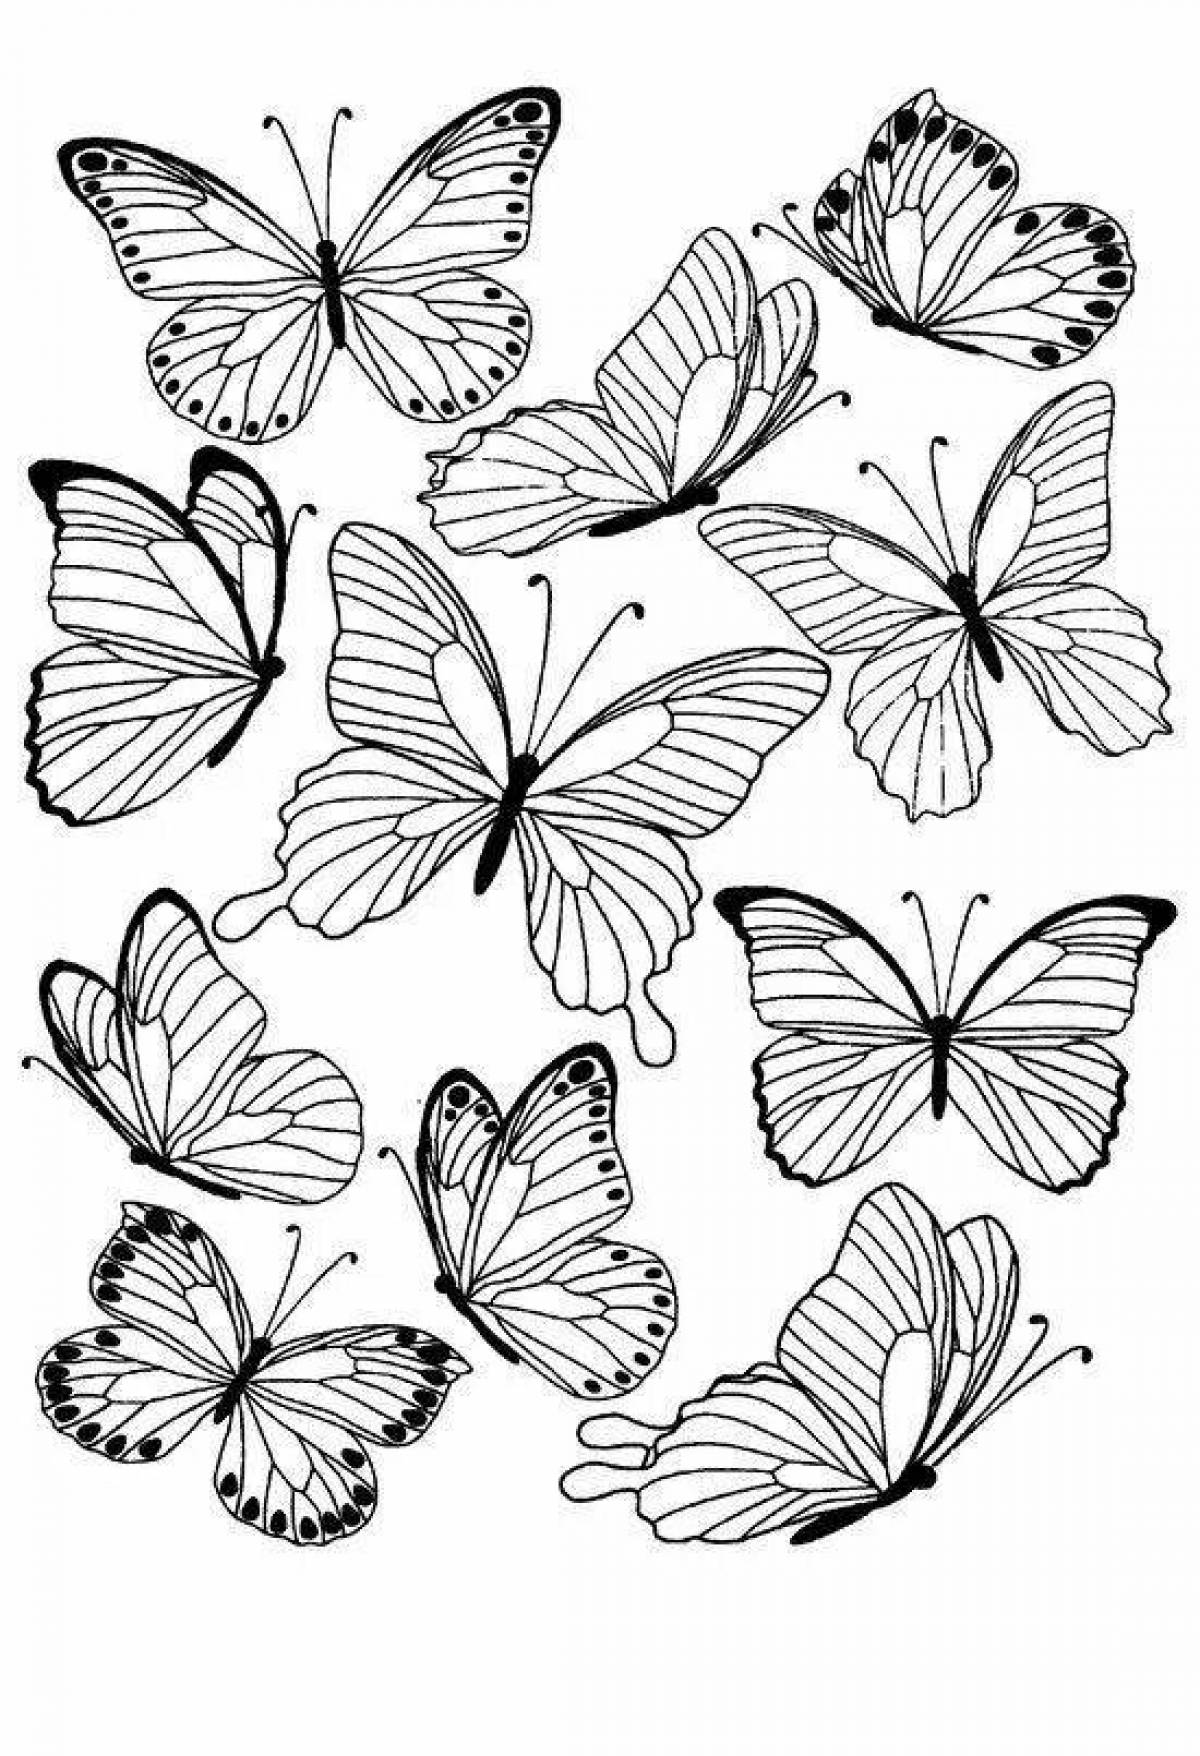 Распечатать черно-белые картинки бабочки для раскрашивания